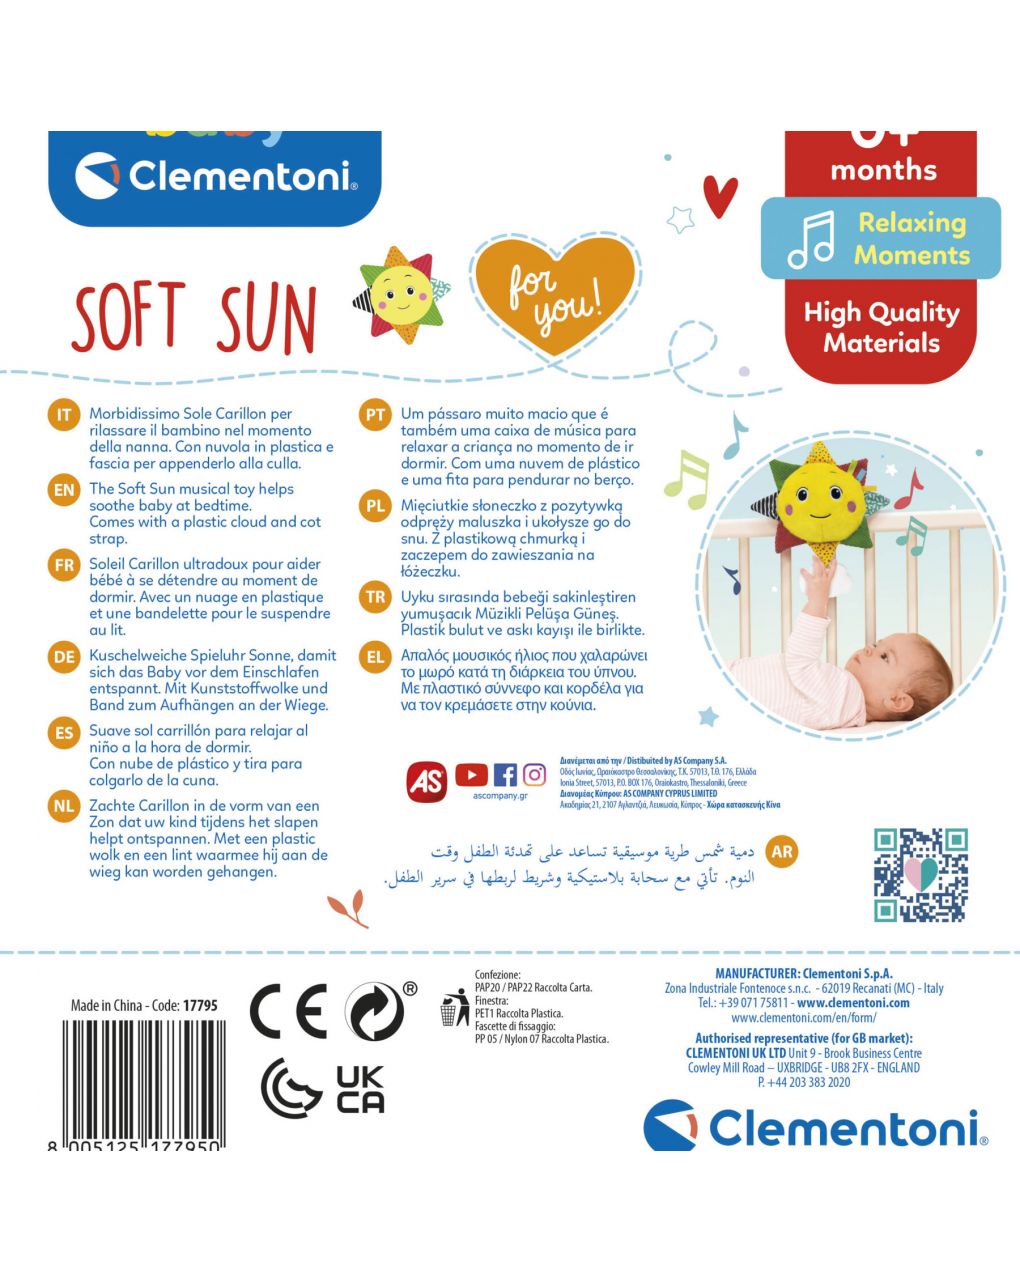 Baby clementoni - jogo musical de sol suave, caixa de música para bebé - Baby Clementoni